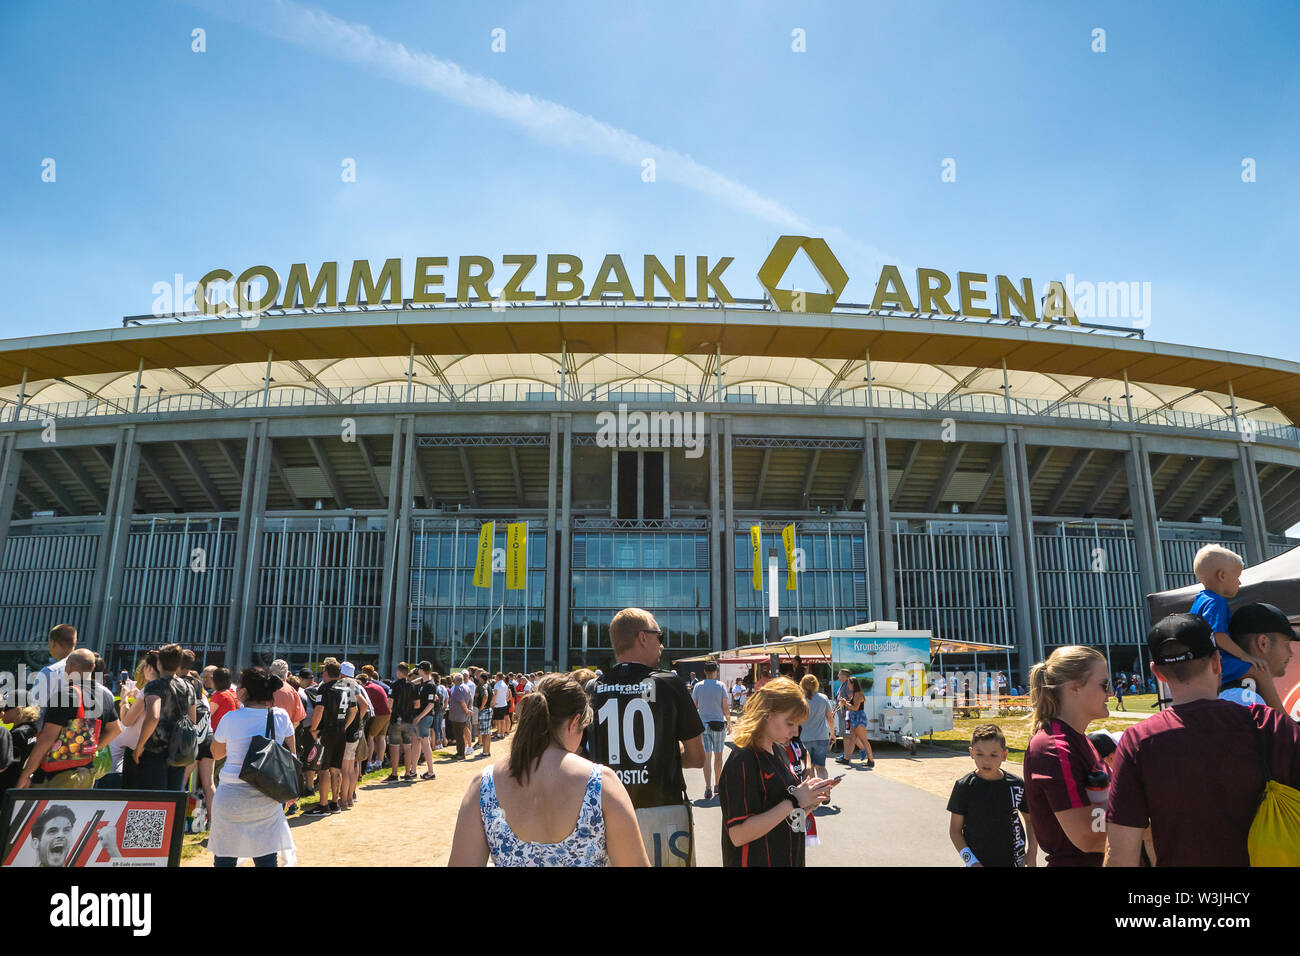 Francfort, Allemagne- Juillet 2019 : Avis de la Commerzbank Arena et des fans de football. Commerzbank-Arena est accueil stade de football club de l'Eintracht Francfort. Banque D'Images